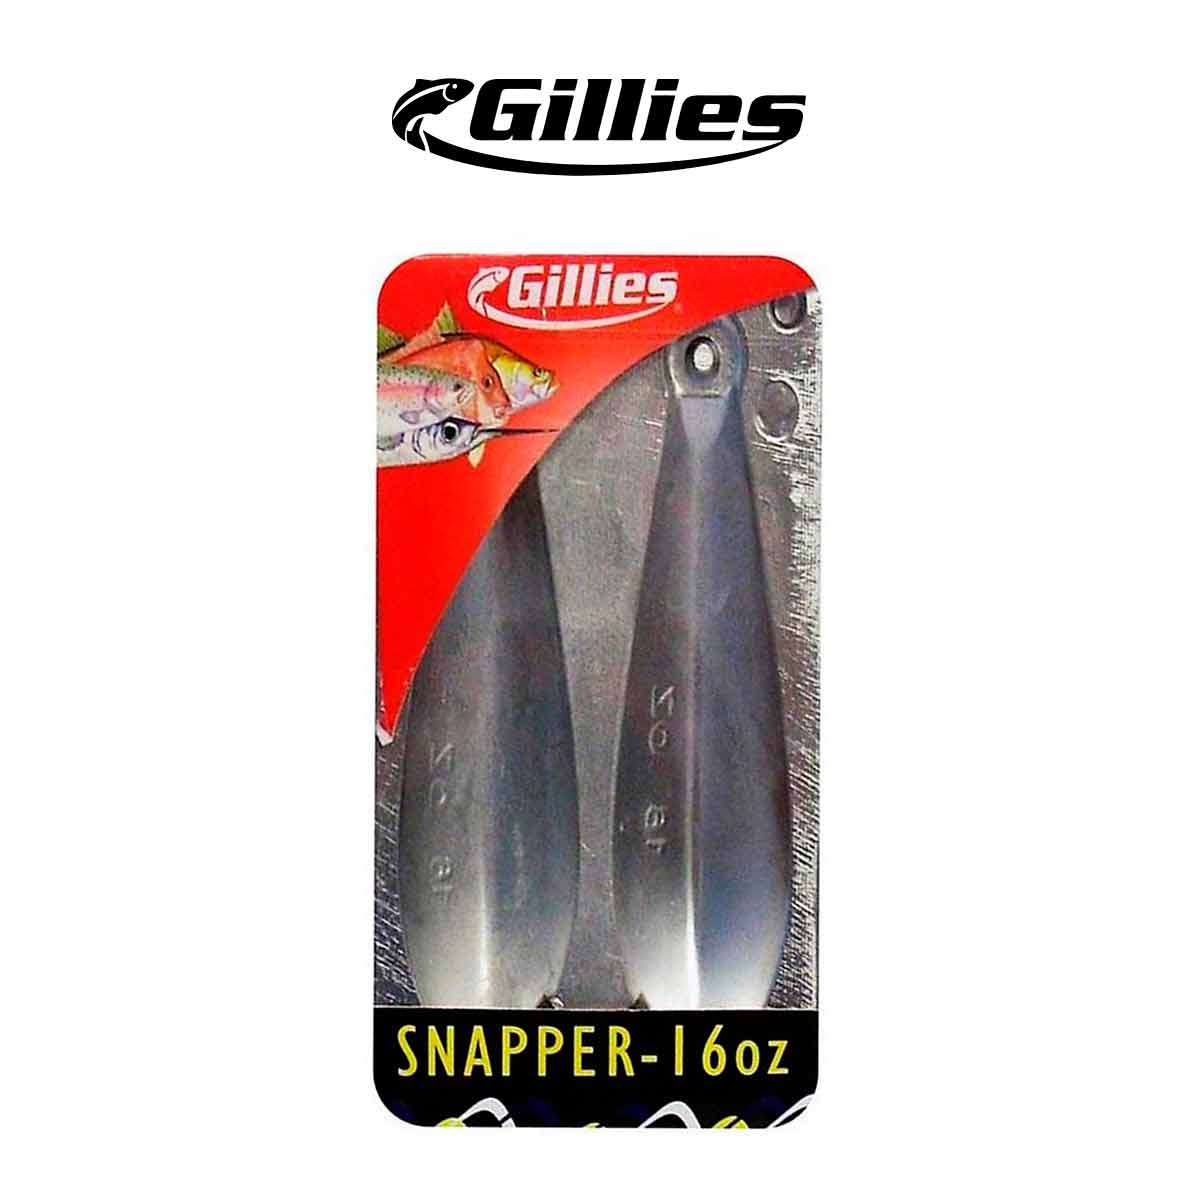 Gillies 16oz Snapper Sinker Mould – Fishing Online Australia